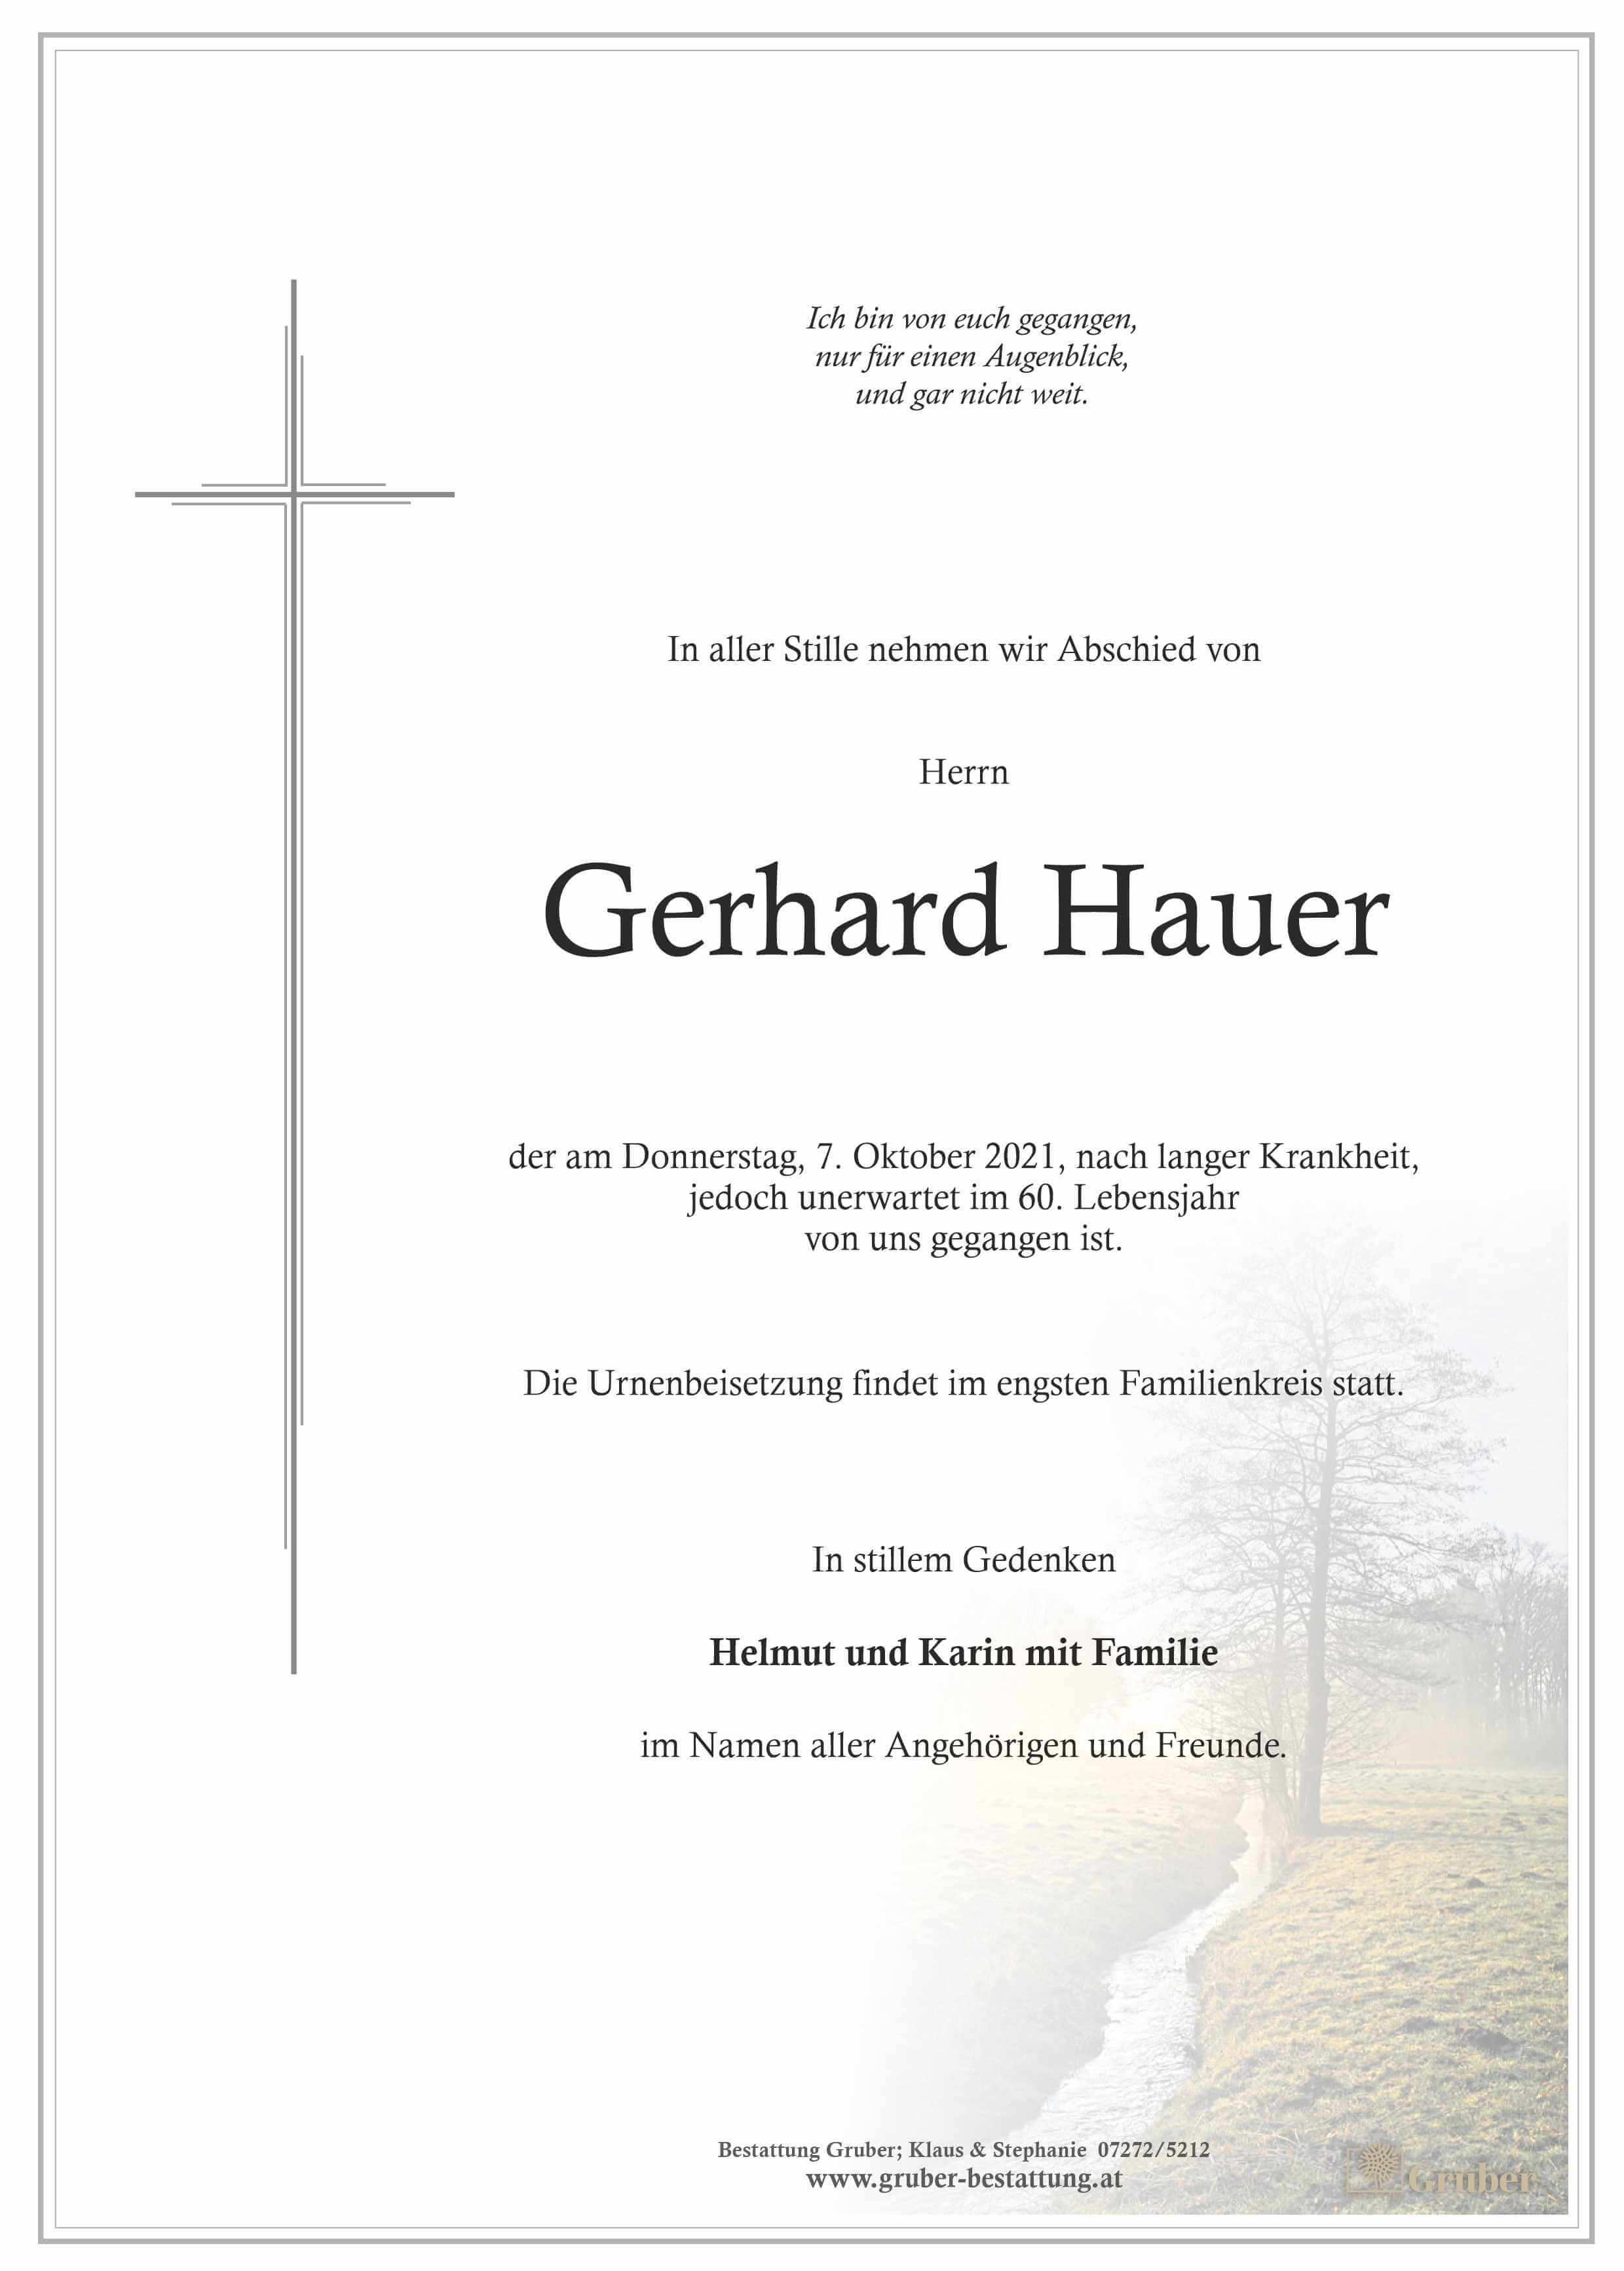 Gerhard Hauer (Wels)